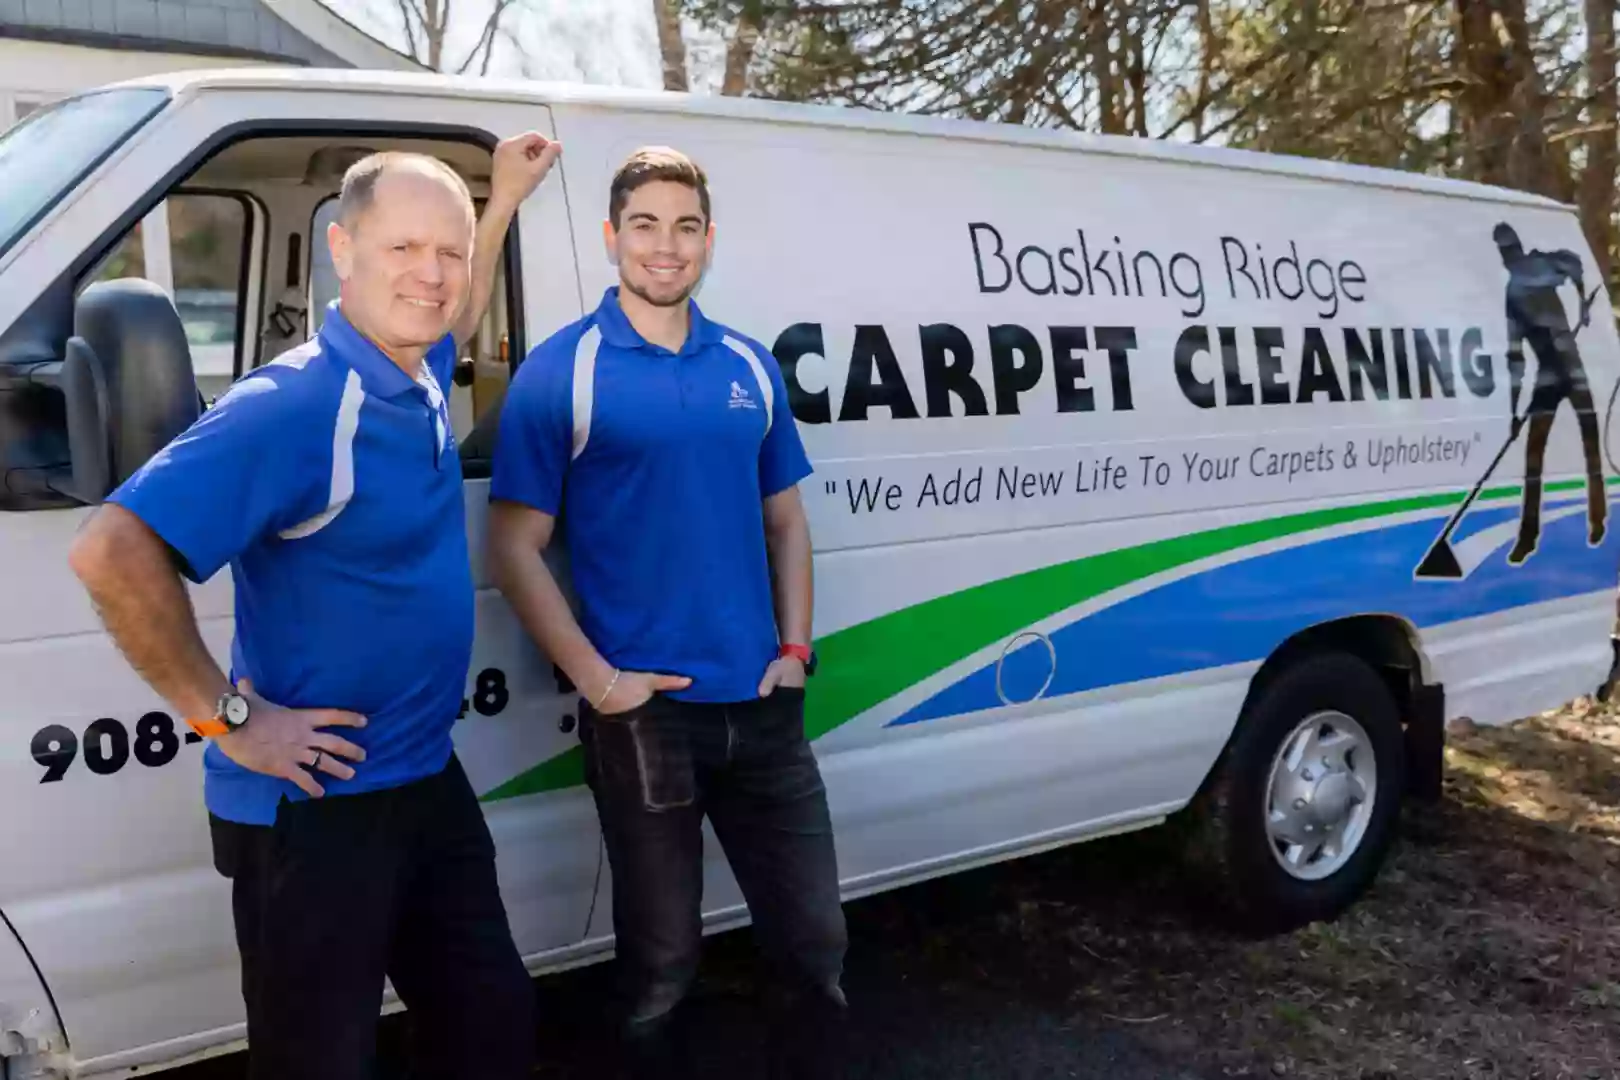 Basking Ridge Carpet Cleaning, LLC